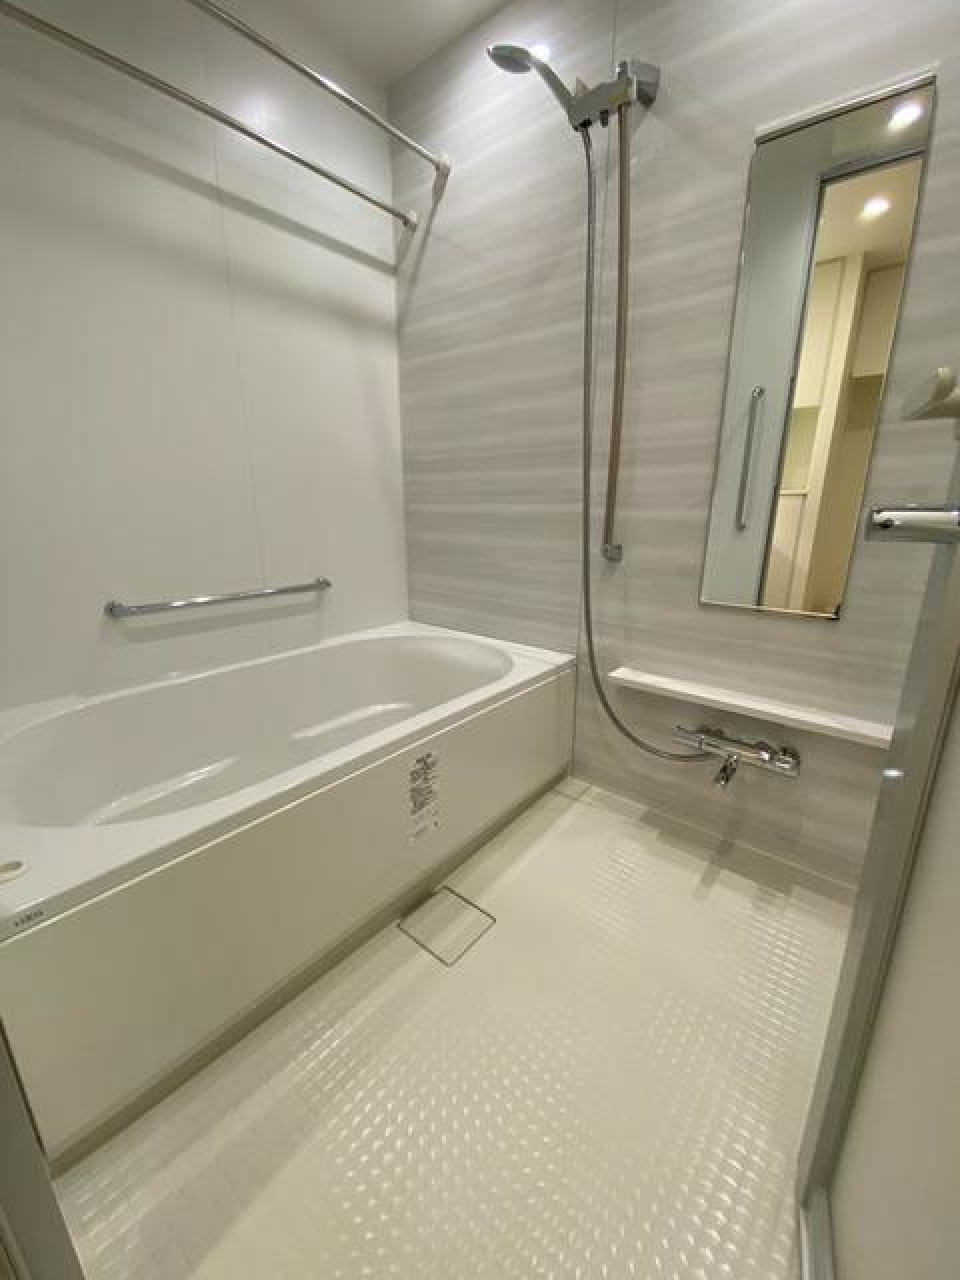 白くまとめられた浴室。※写真は同タイプ住戸です。